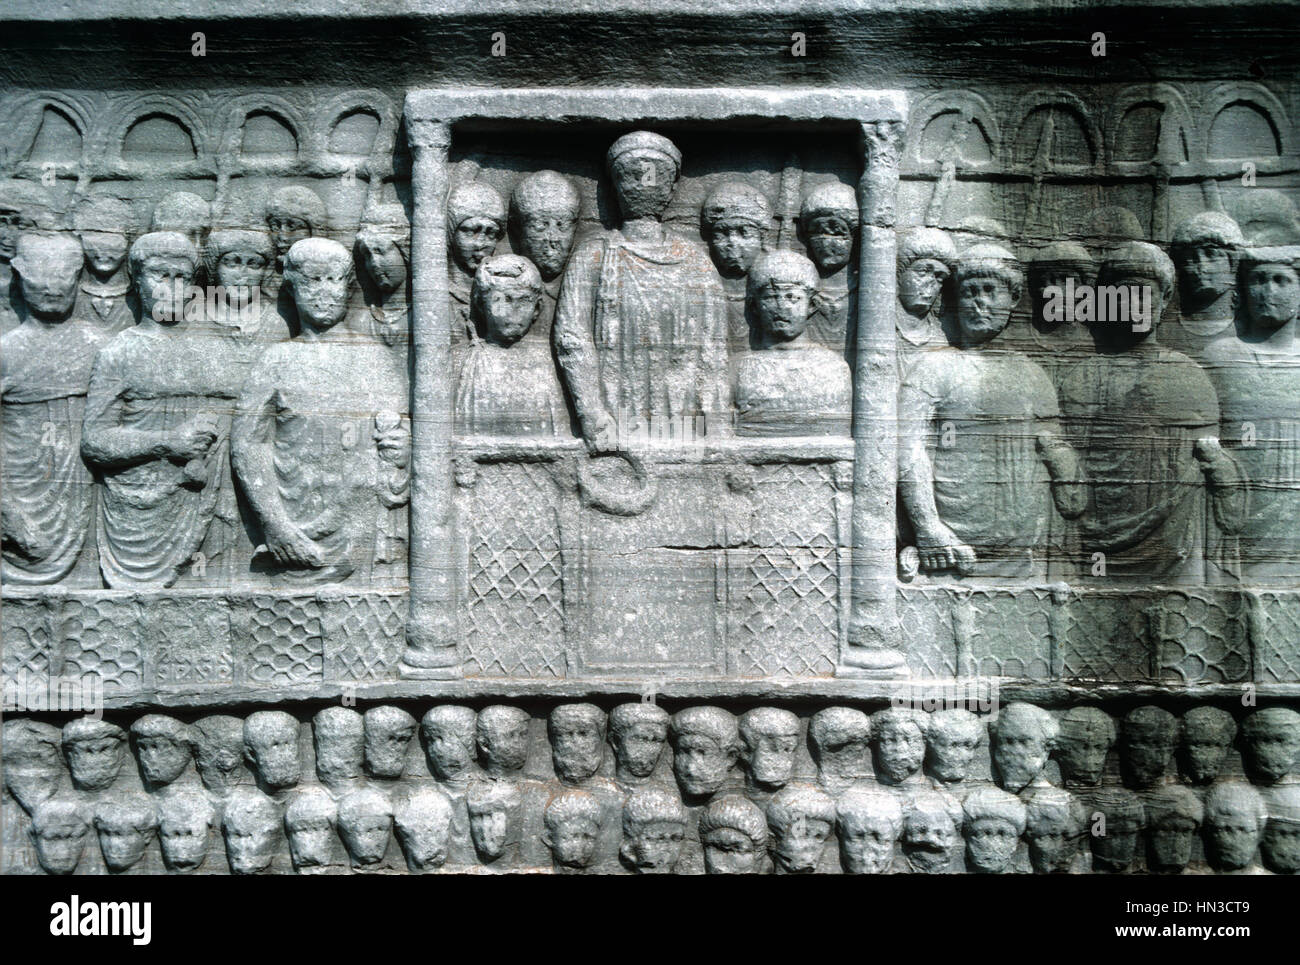 La sculpture de secours de l'empereur byzantin Théodose Ier, ou Théodose le Grand, couronnement vainqueurs à la base de l'obélisque égyptien dans l'Hippodrome, Sultanahmet, Istanbul, Turquie Banque D'Images